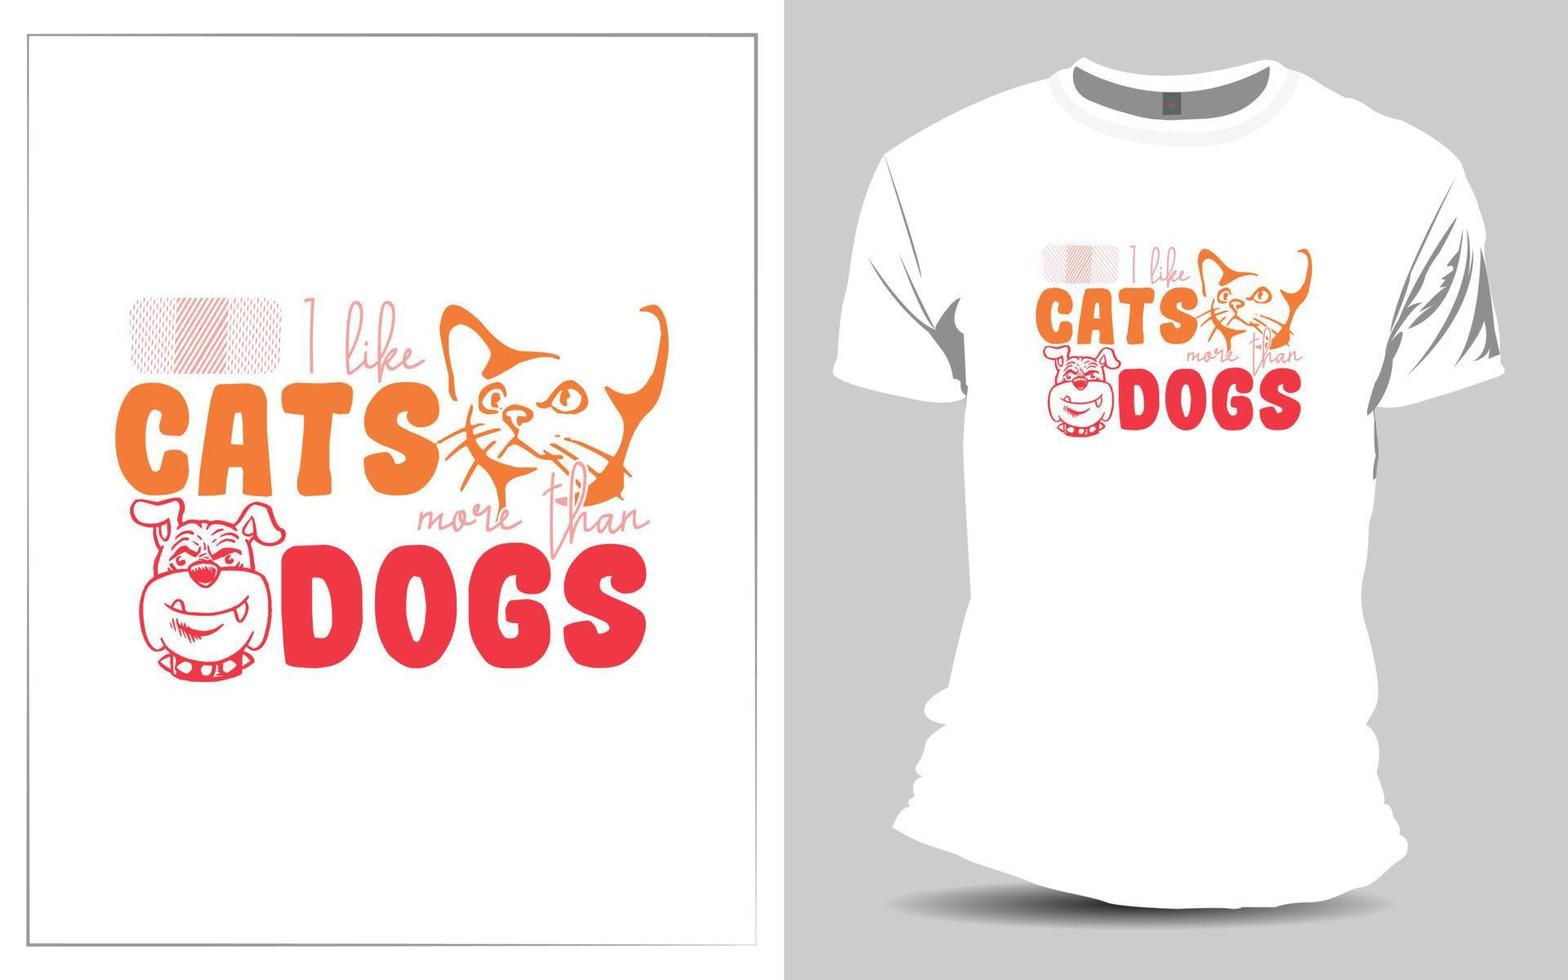 härlig katt t-shirt design för din sällskapsdjur vektor